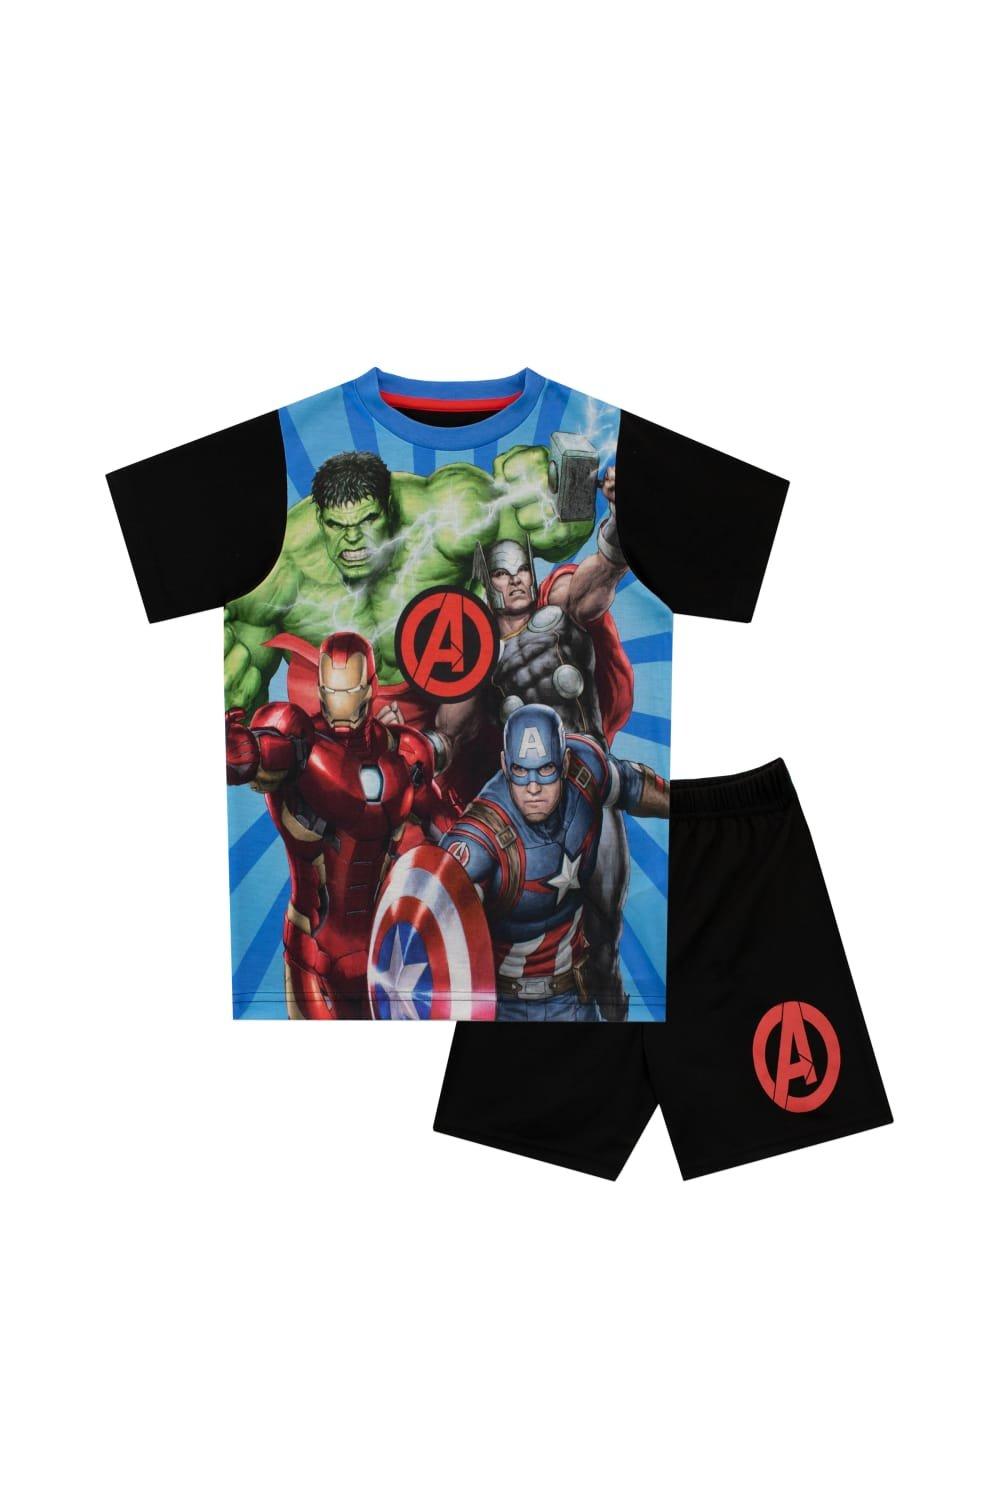 Avengers Short Pyjamas